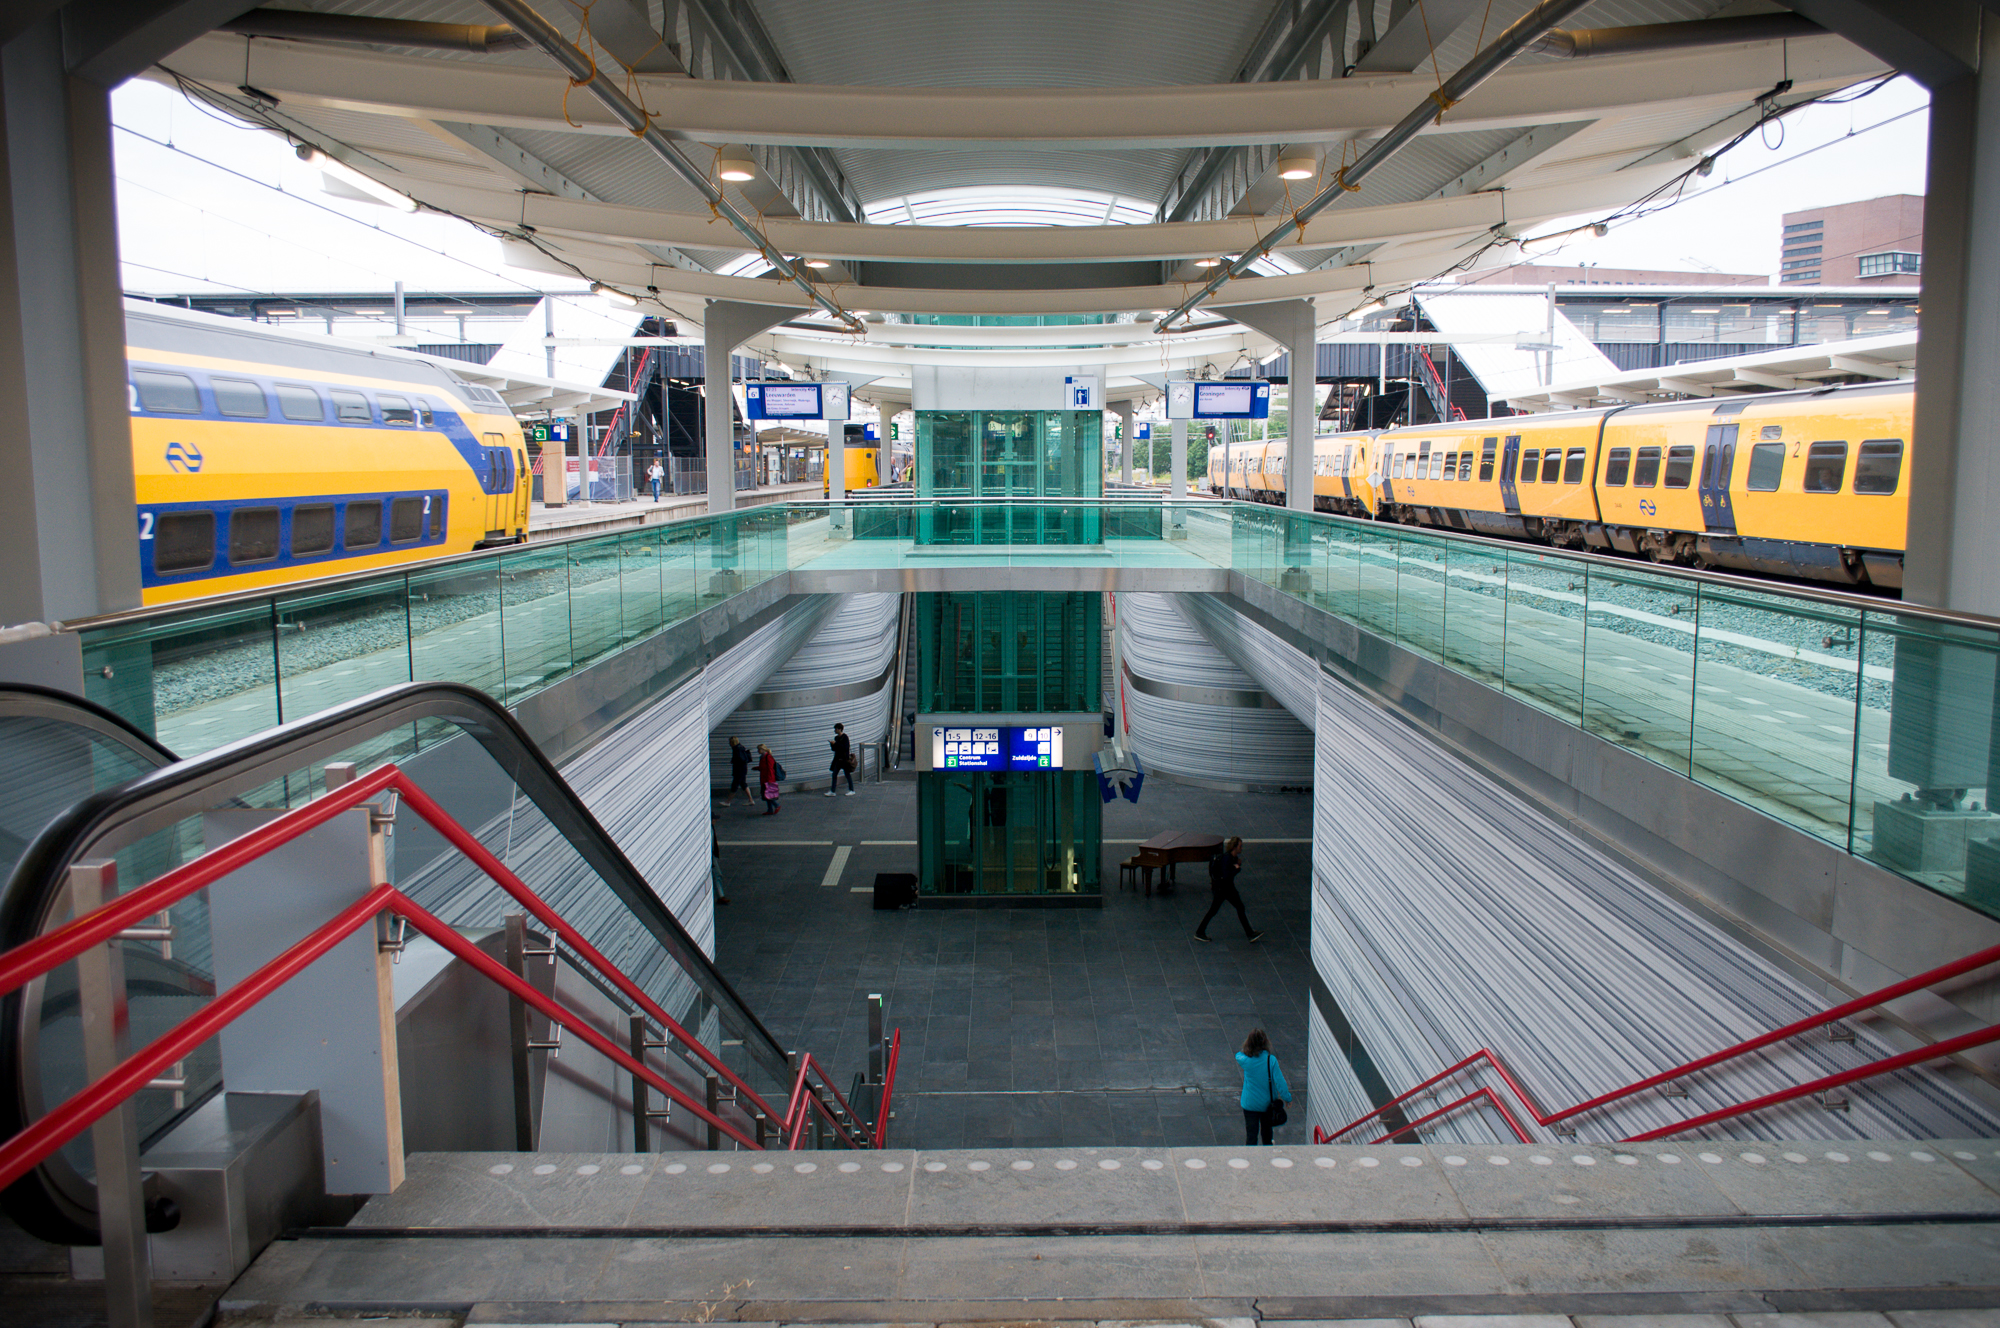 Nieuwe spoortunnel station Zwolle. De tunnelvloer is gemaakt van ruim 1400 m3 beton.